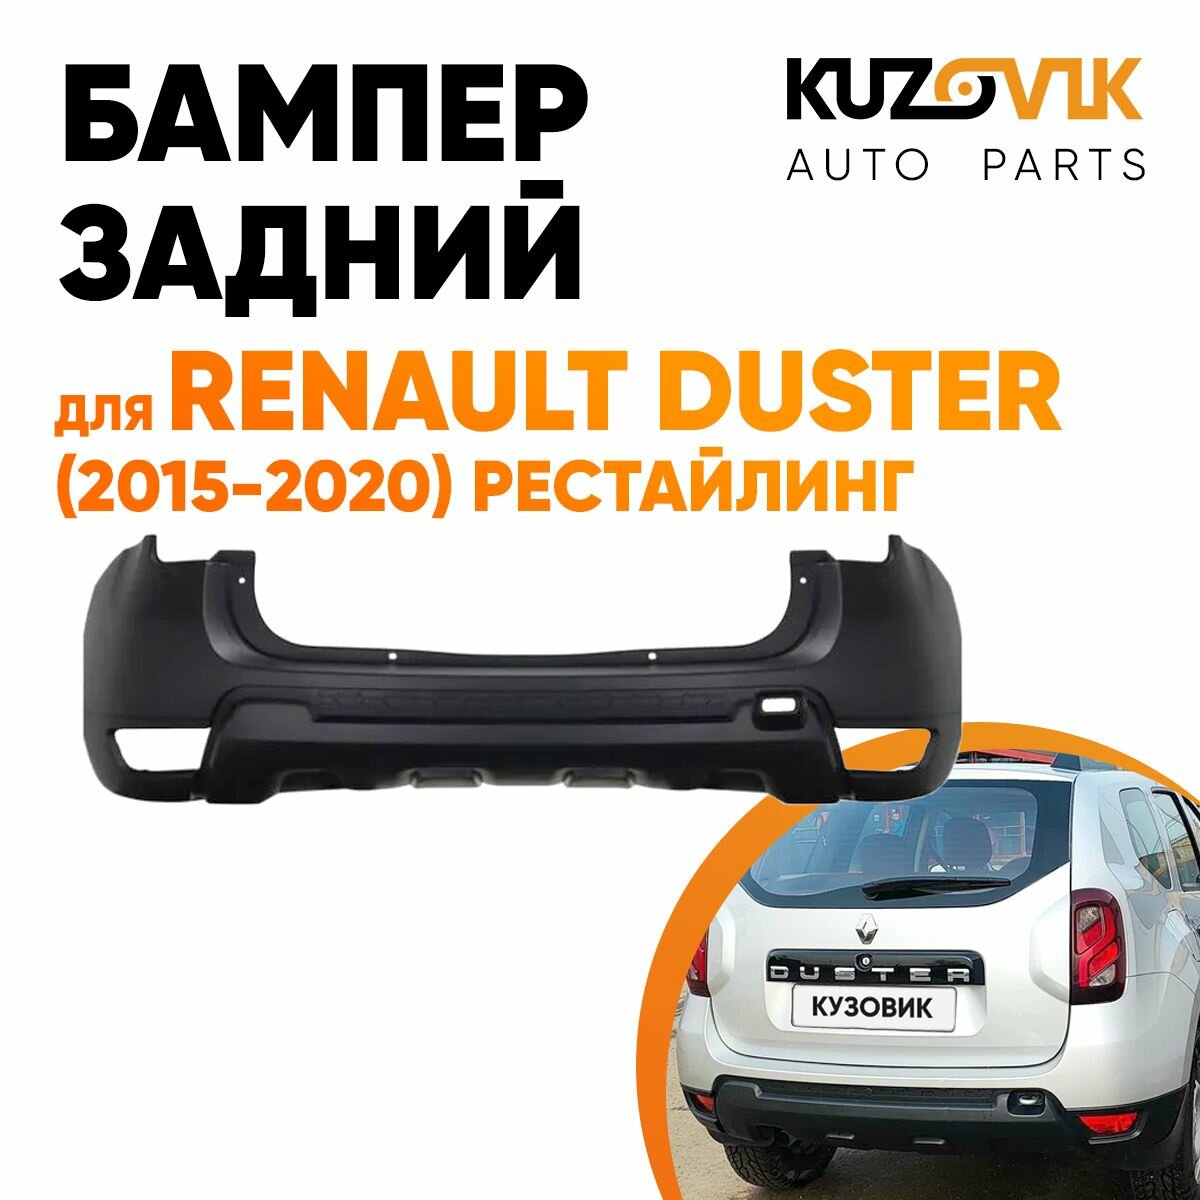 Бампер задний Renault Duster (2015-2020) рестайлинг